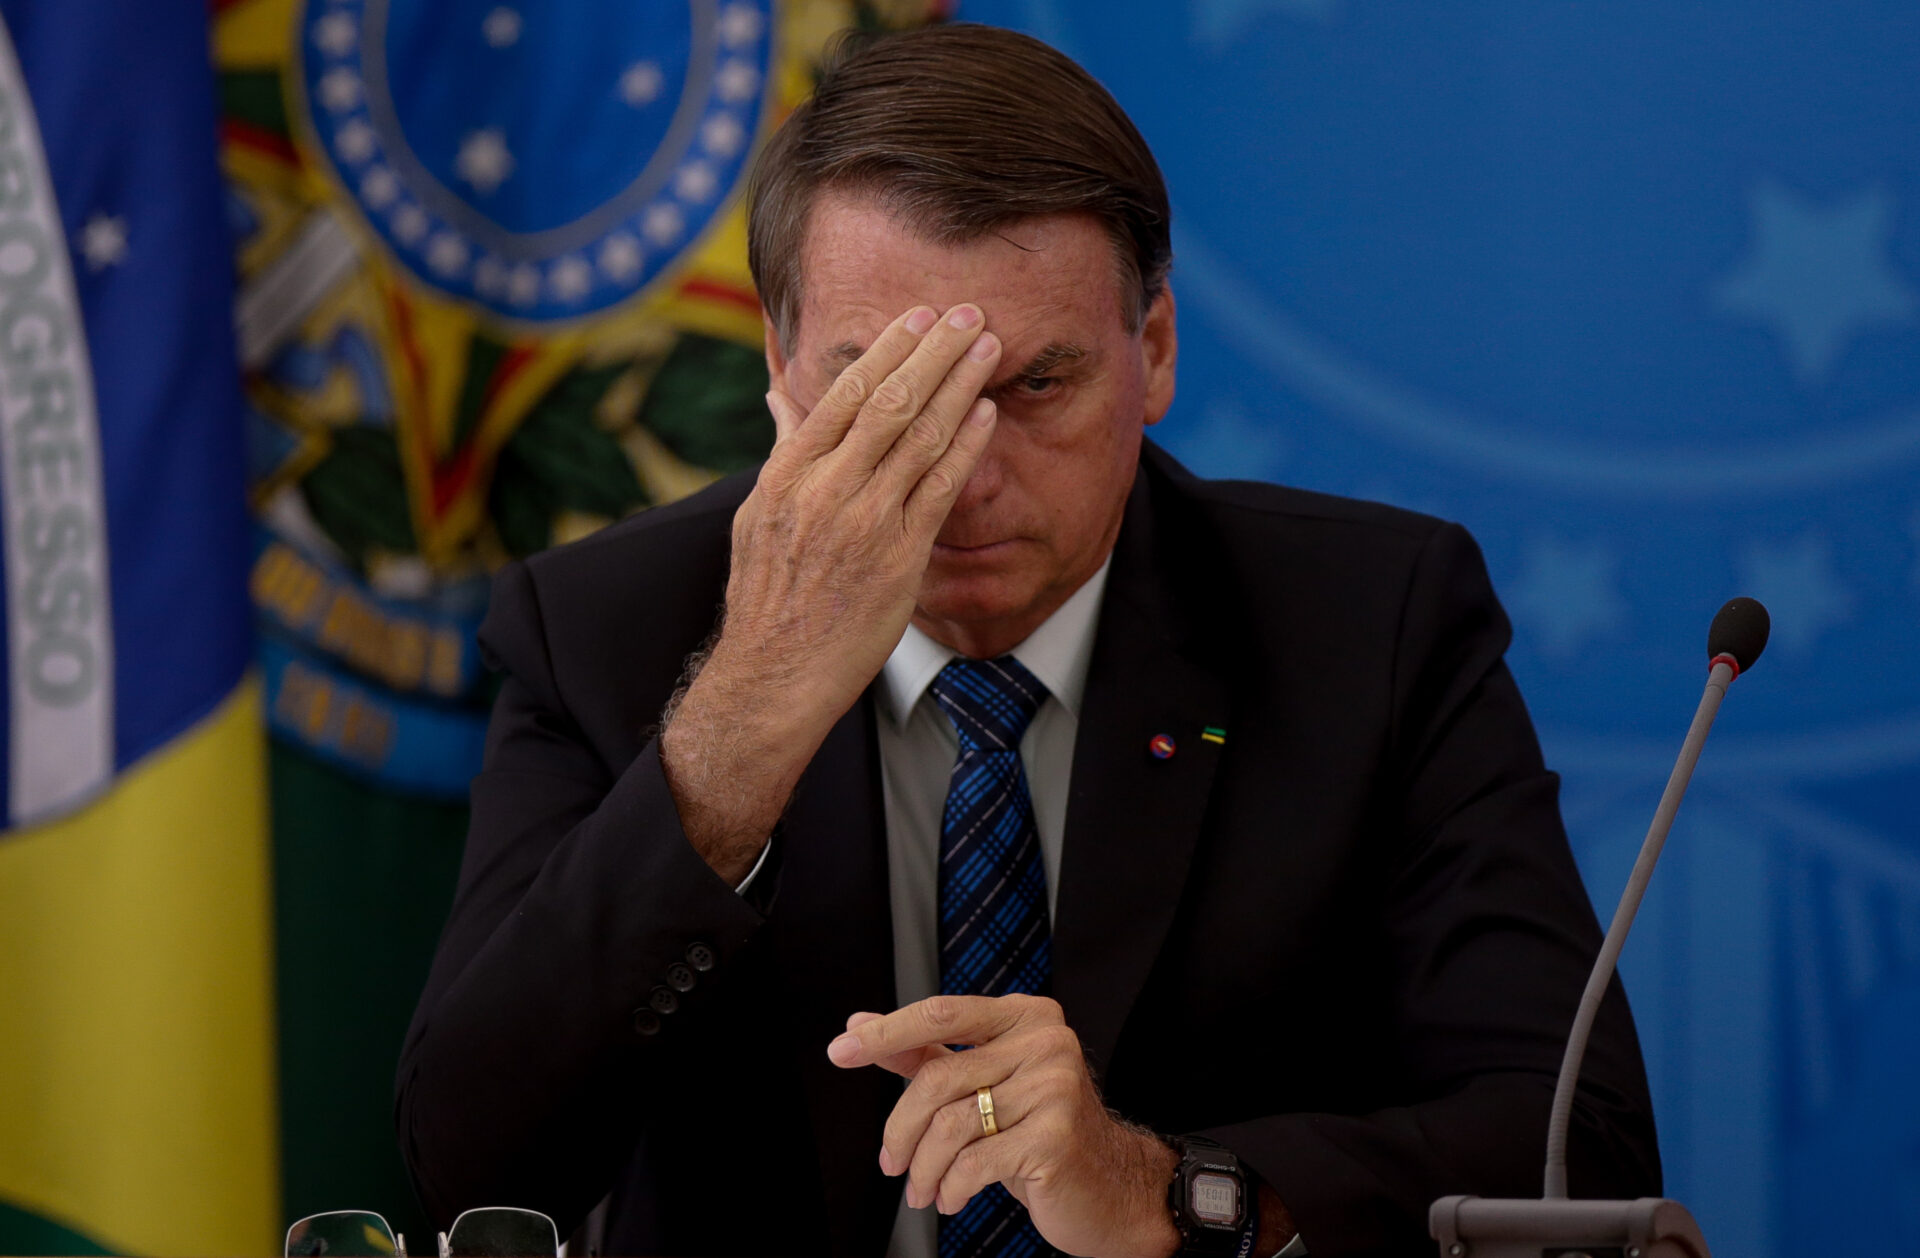 Comandantes das Forças Armadas pedem demissão em protesto contra Bolsonaro